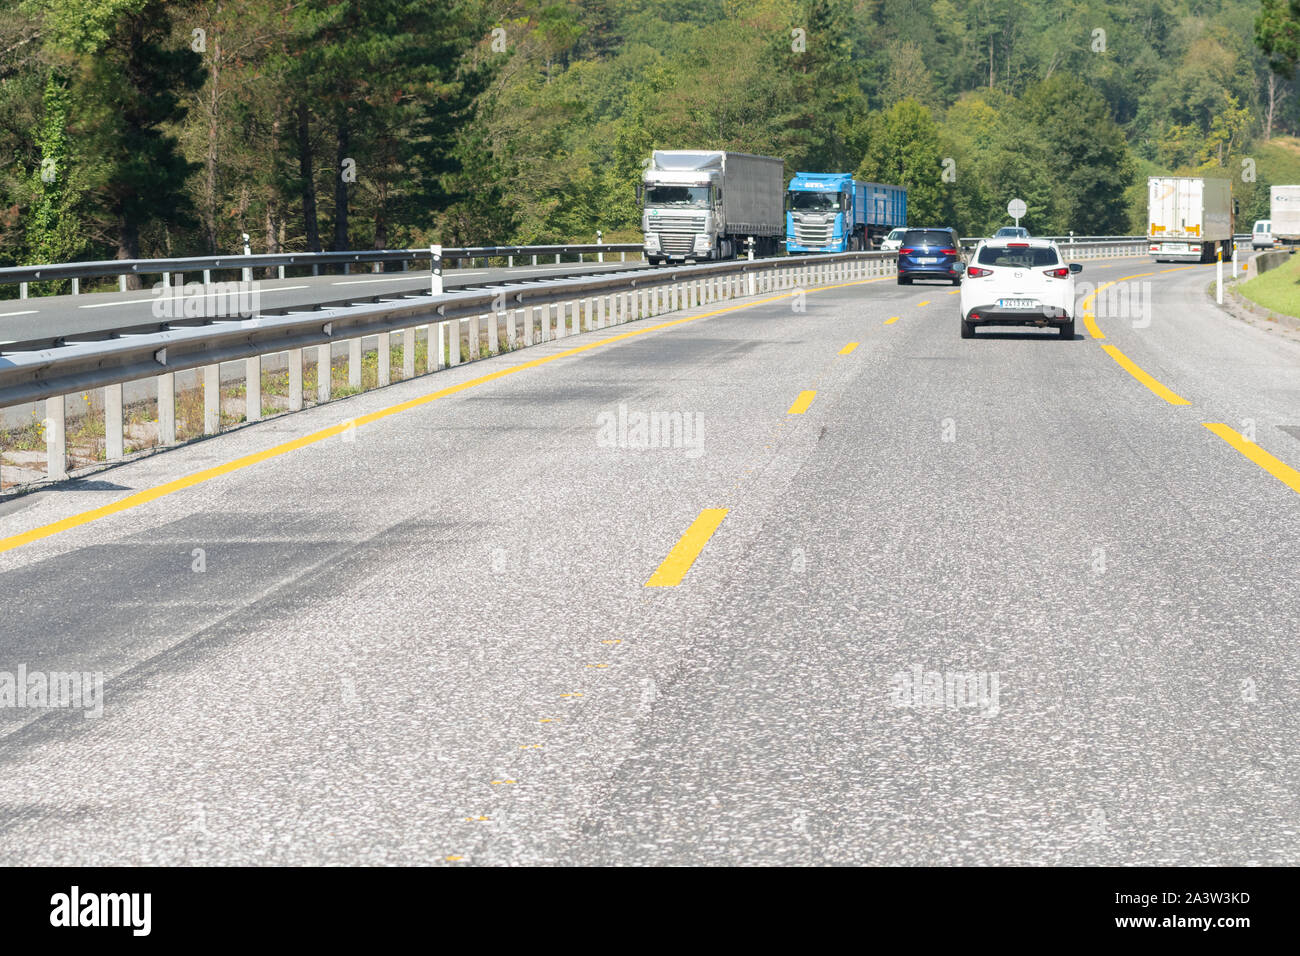 Marques de surface routière temporaire jaune sur une route de l'Espagne, l'Europe Banque D'Images